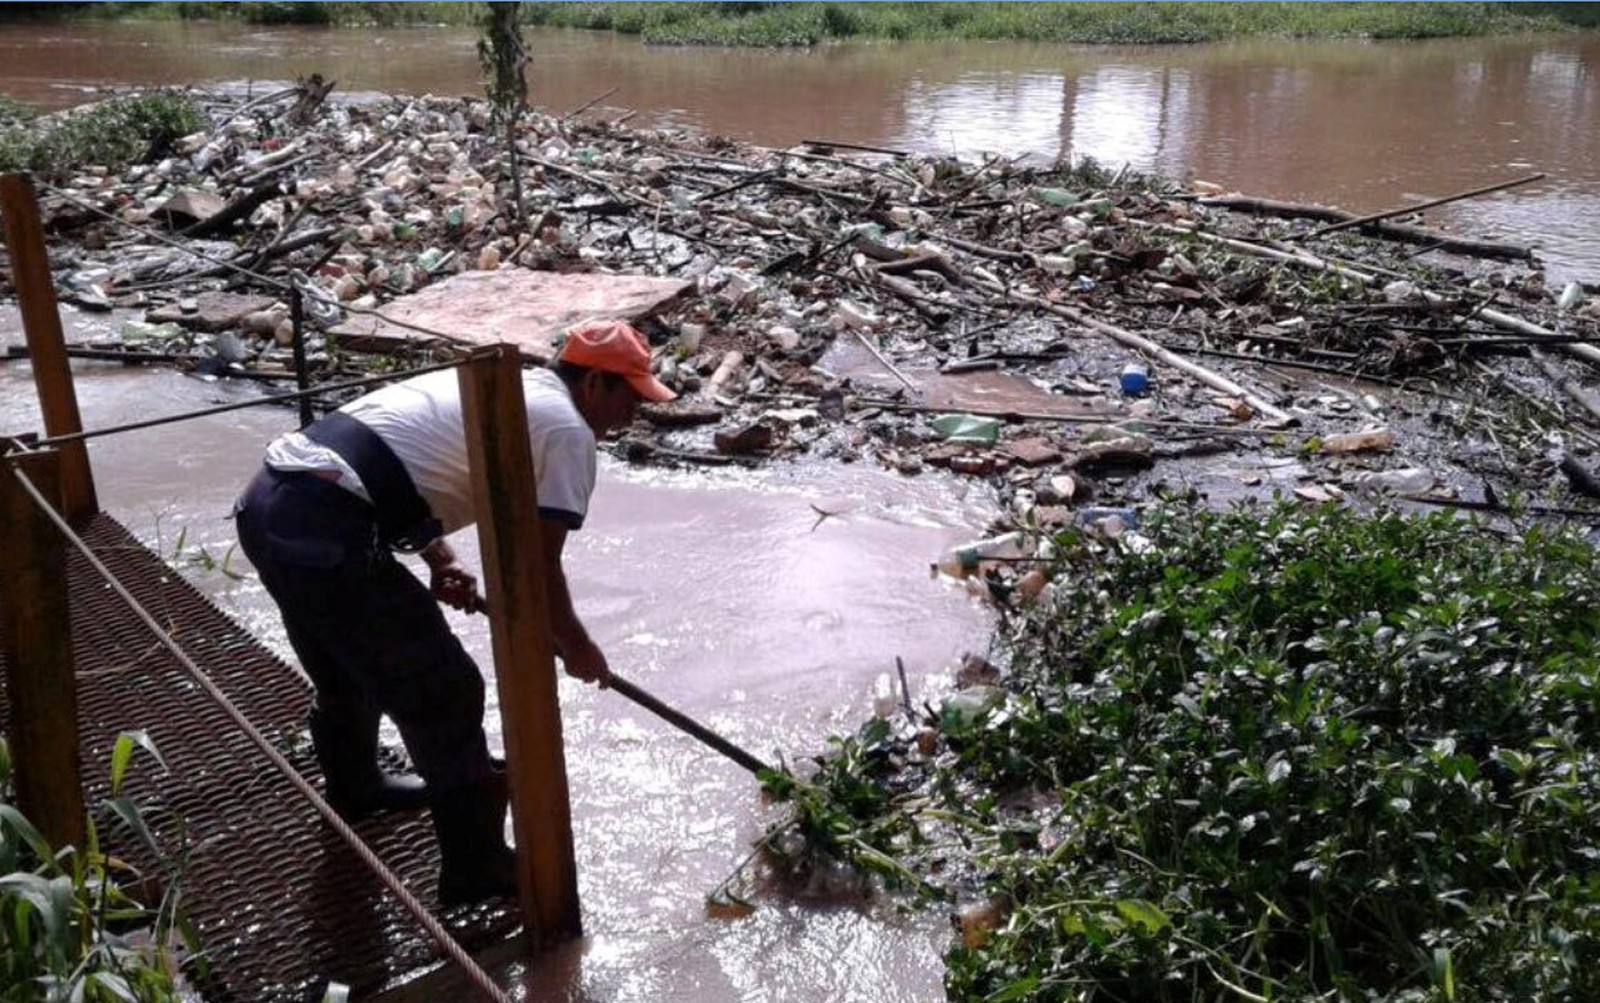  Capivari (SP) – Defesa Civil recolhe 2 toneladas de lixo do Rio Capivari, diz Prefeitura | SP / Piracicaba e Região | G1